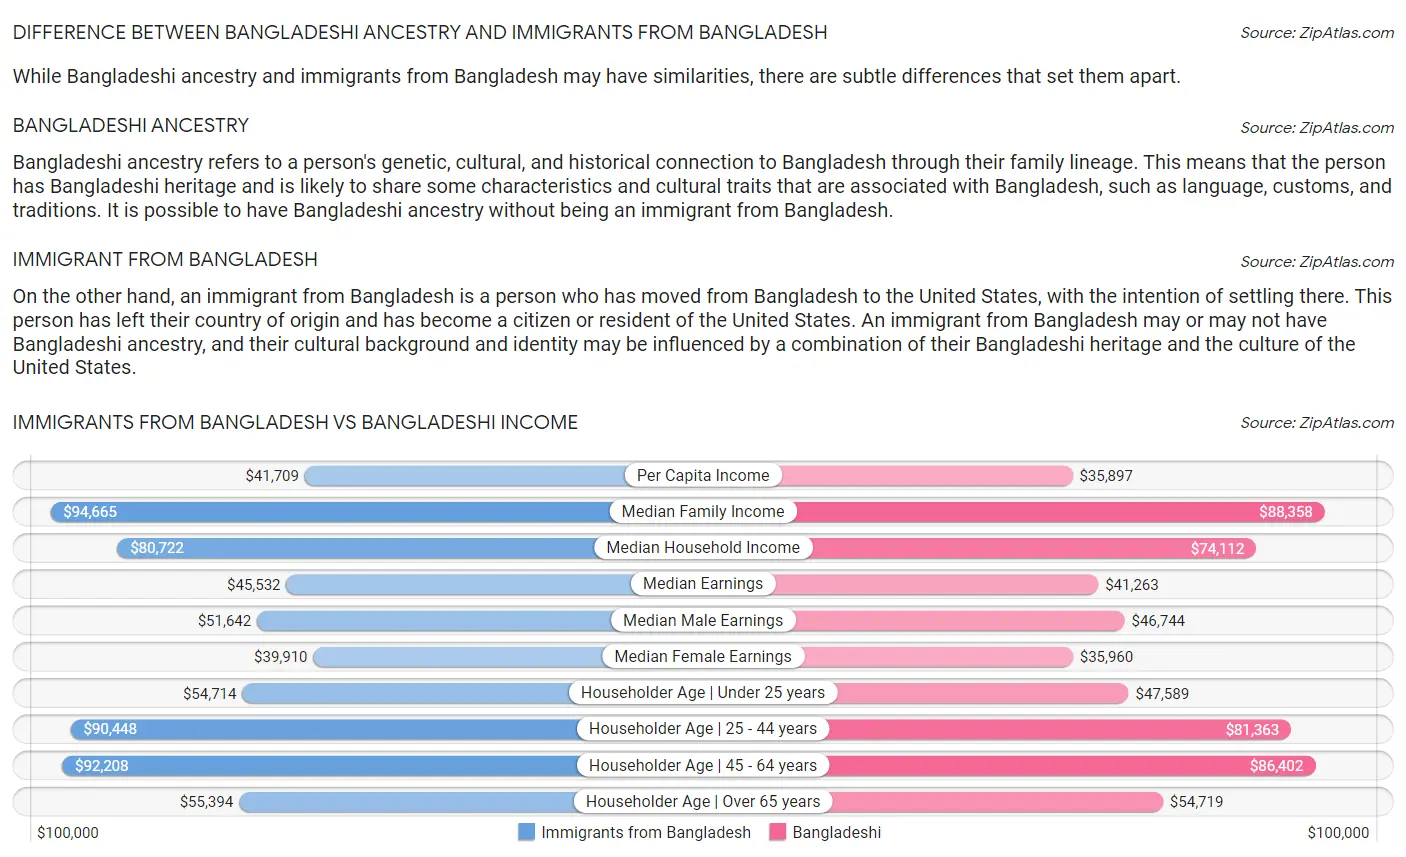 Immigrants from Bangladesh vs Bangladeshi Income